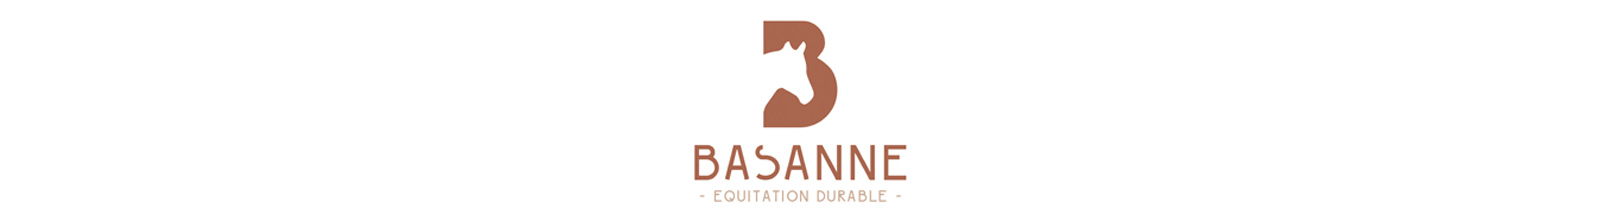 Logo-Basanne-Equitation-durable